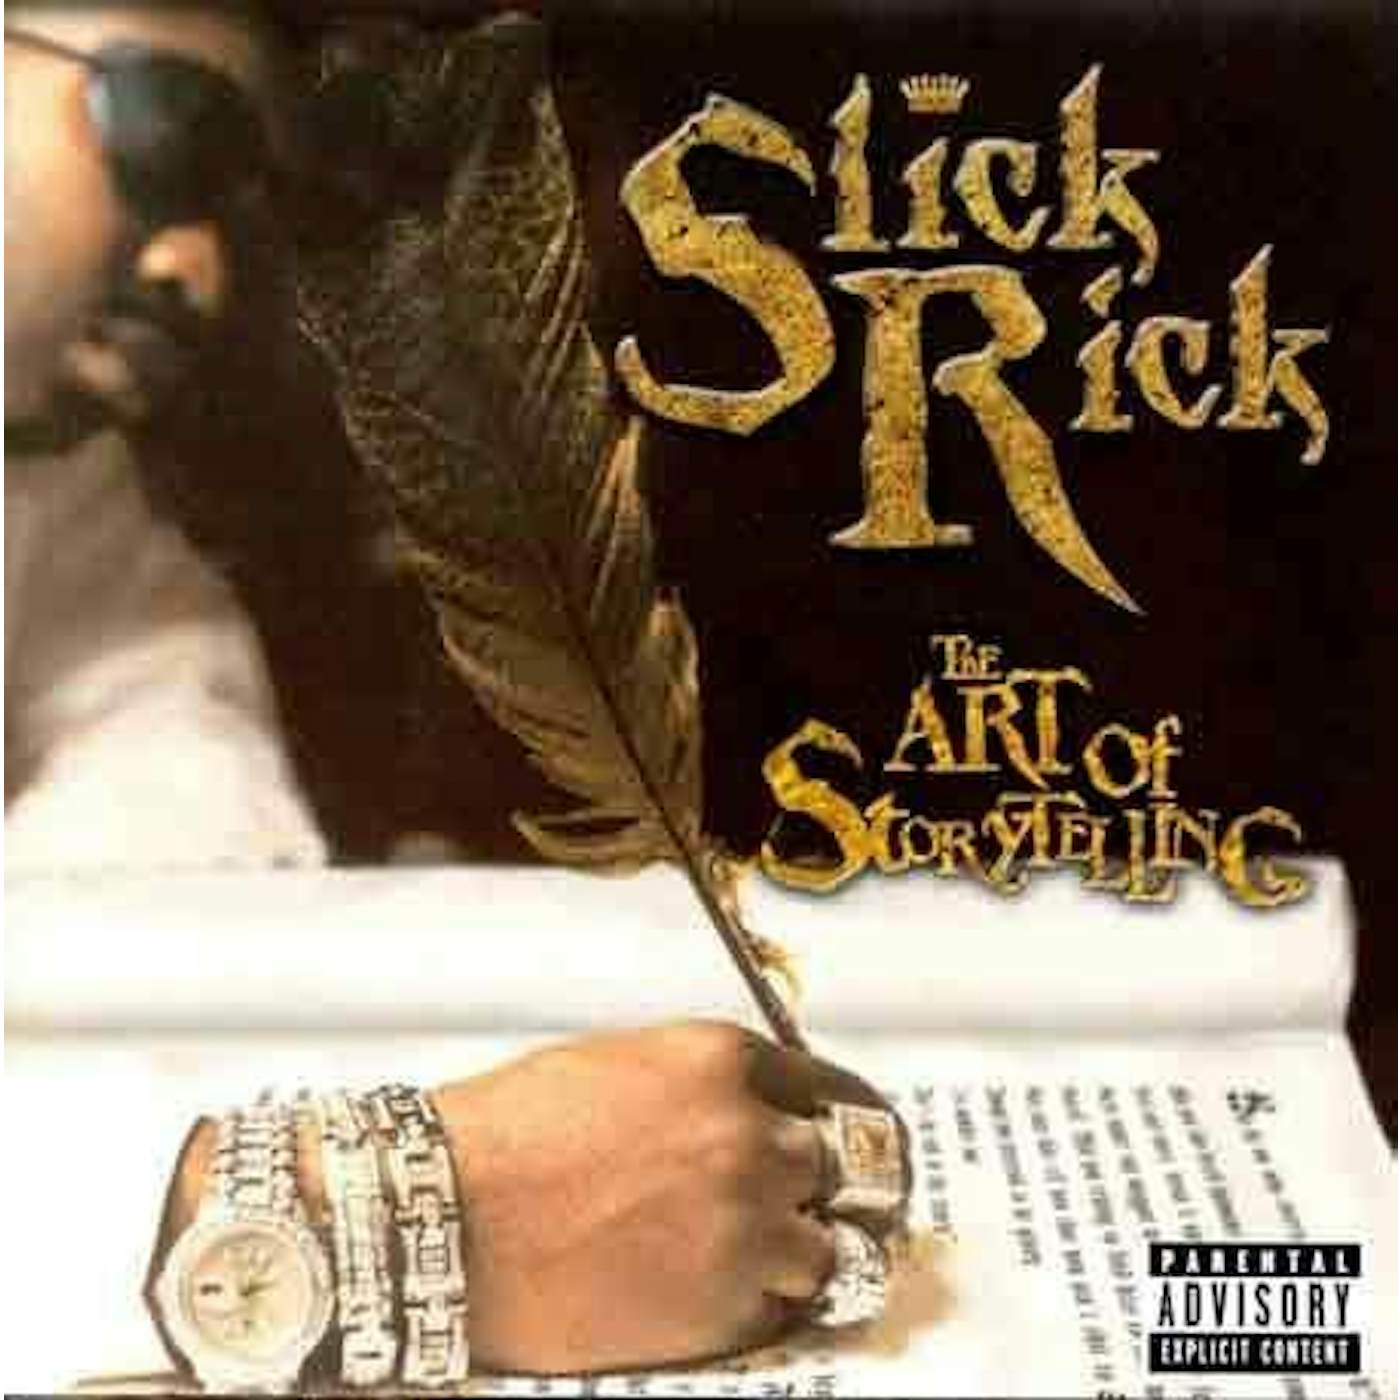 Slick Rick ART OF STORYTELLING CD